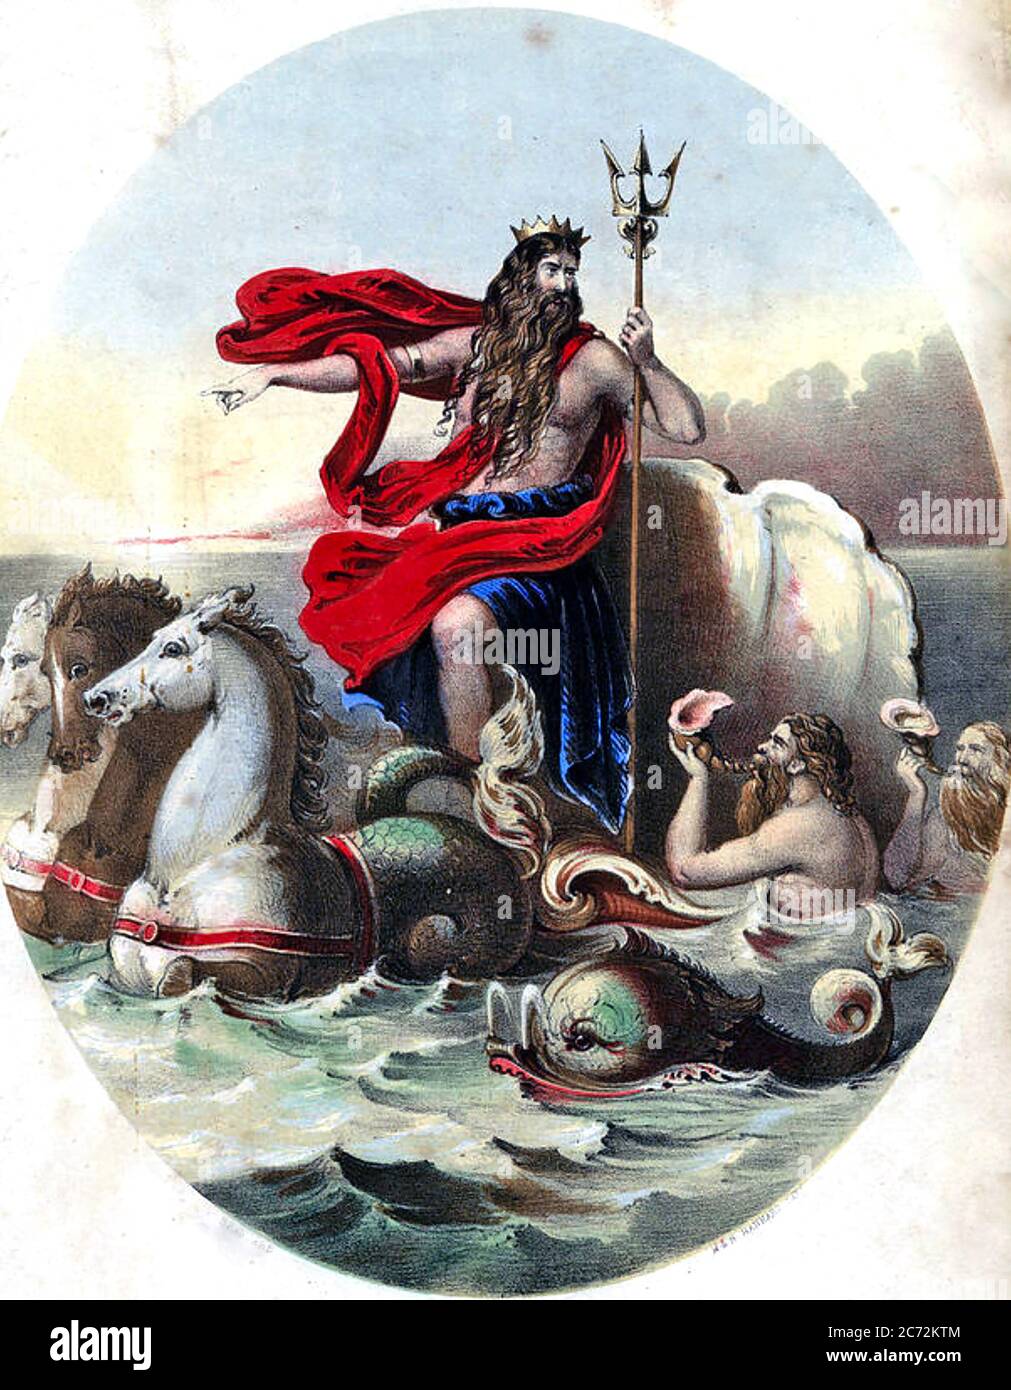 NEPTUNO dios romano del mar en la portada de la partitura victoriana. Foto de stock